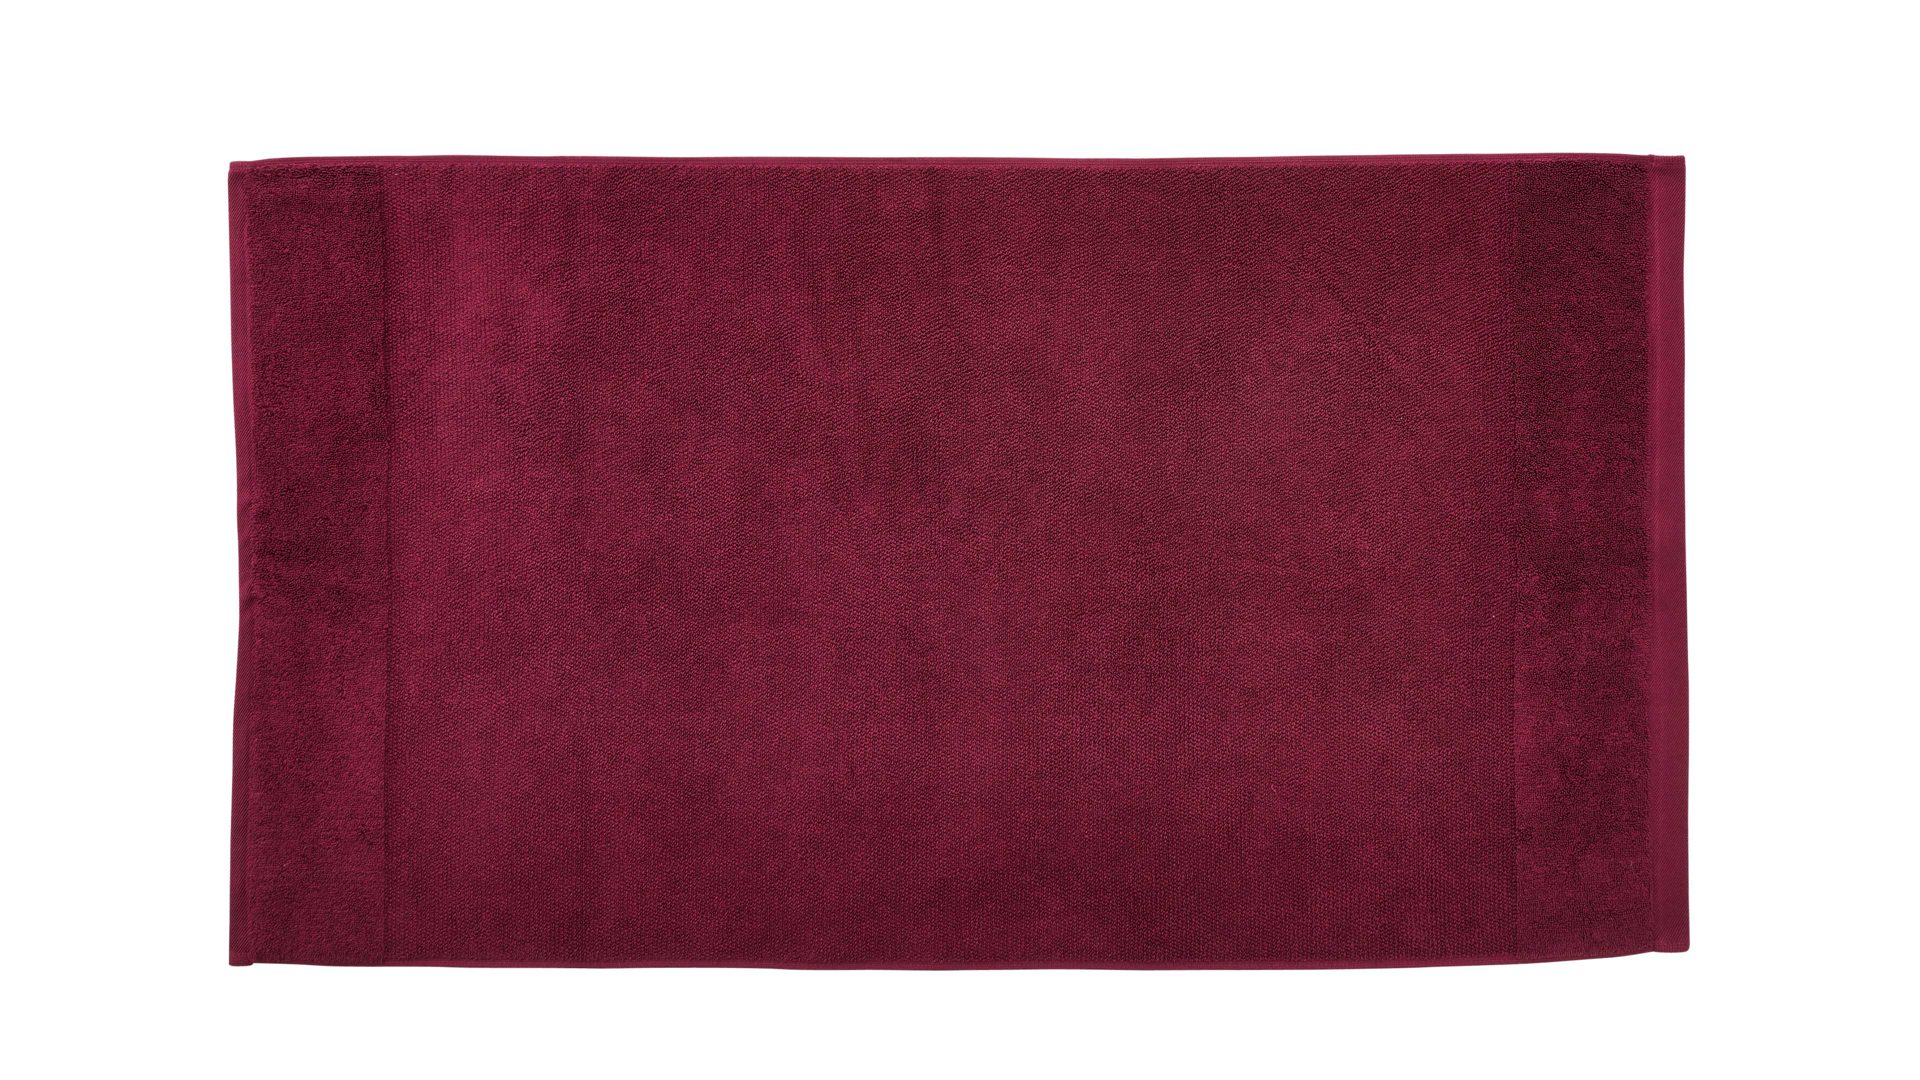 Handtuch Interliving aus Naturfaser in Rot Interliving Handtuch Serie 9108 - Handtuch Beere– ca. 60 x 110 cm